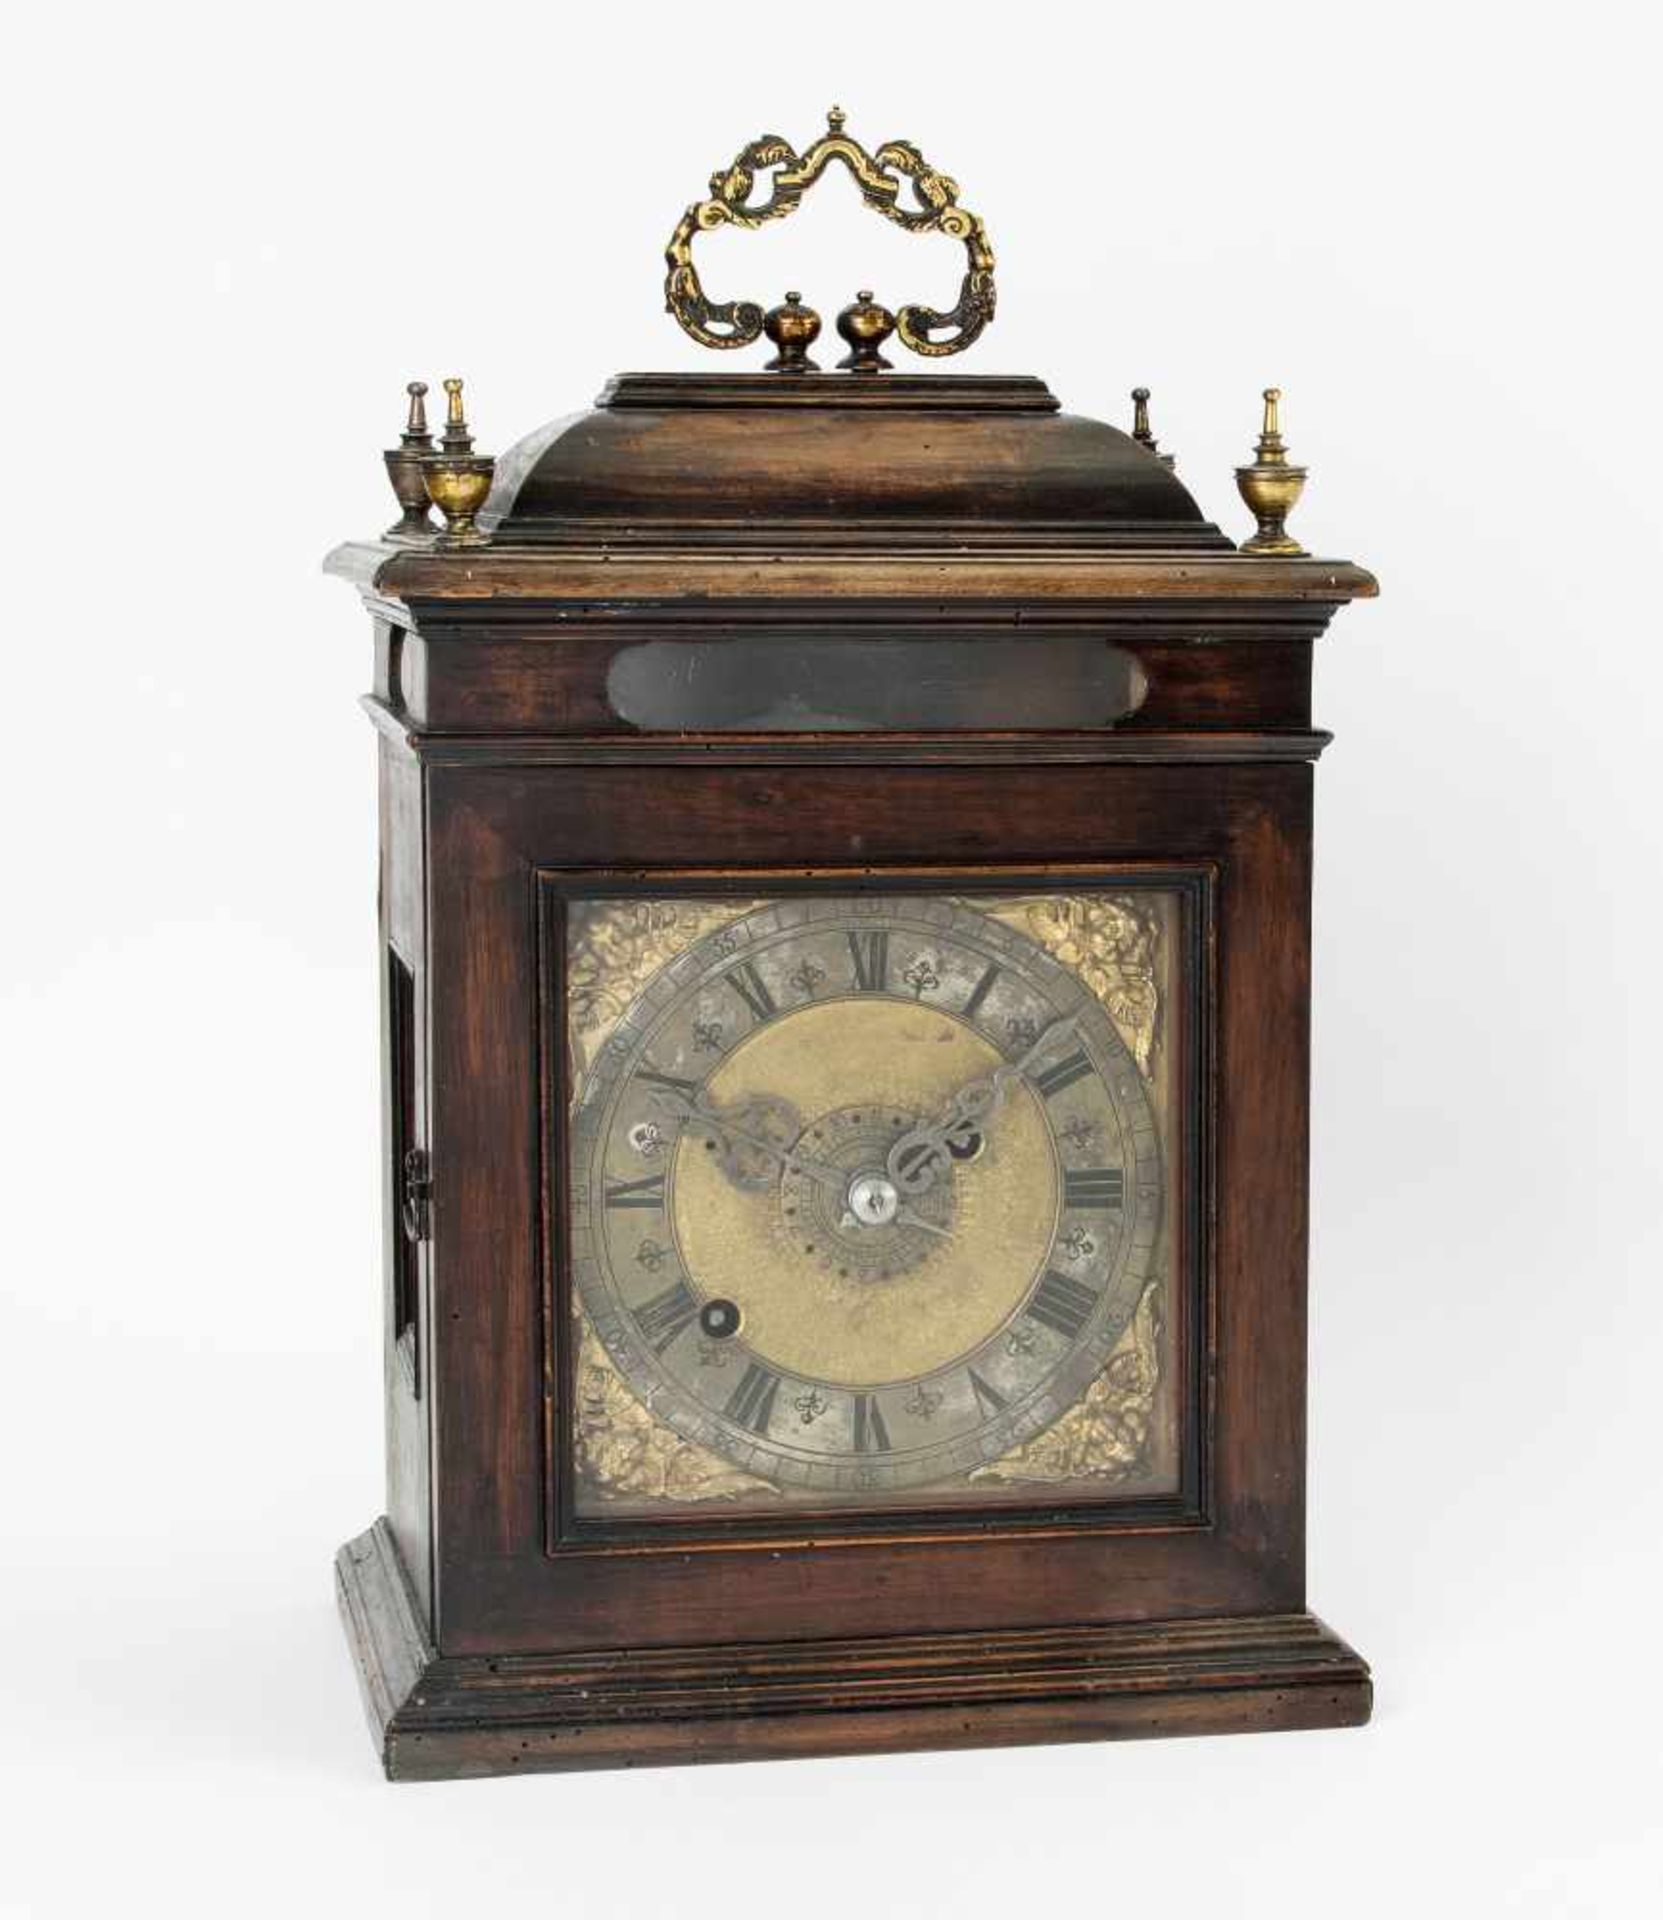 Bracket Clock England,18.Jh. Holzgehäuse mit Traggriff und vier kleinen Vasenabschlüssen.